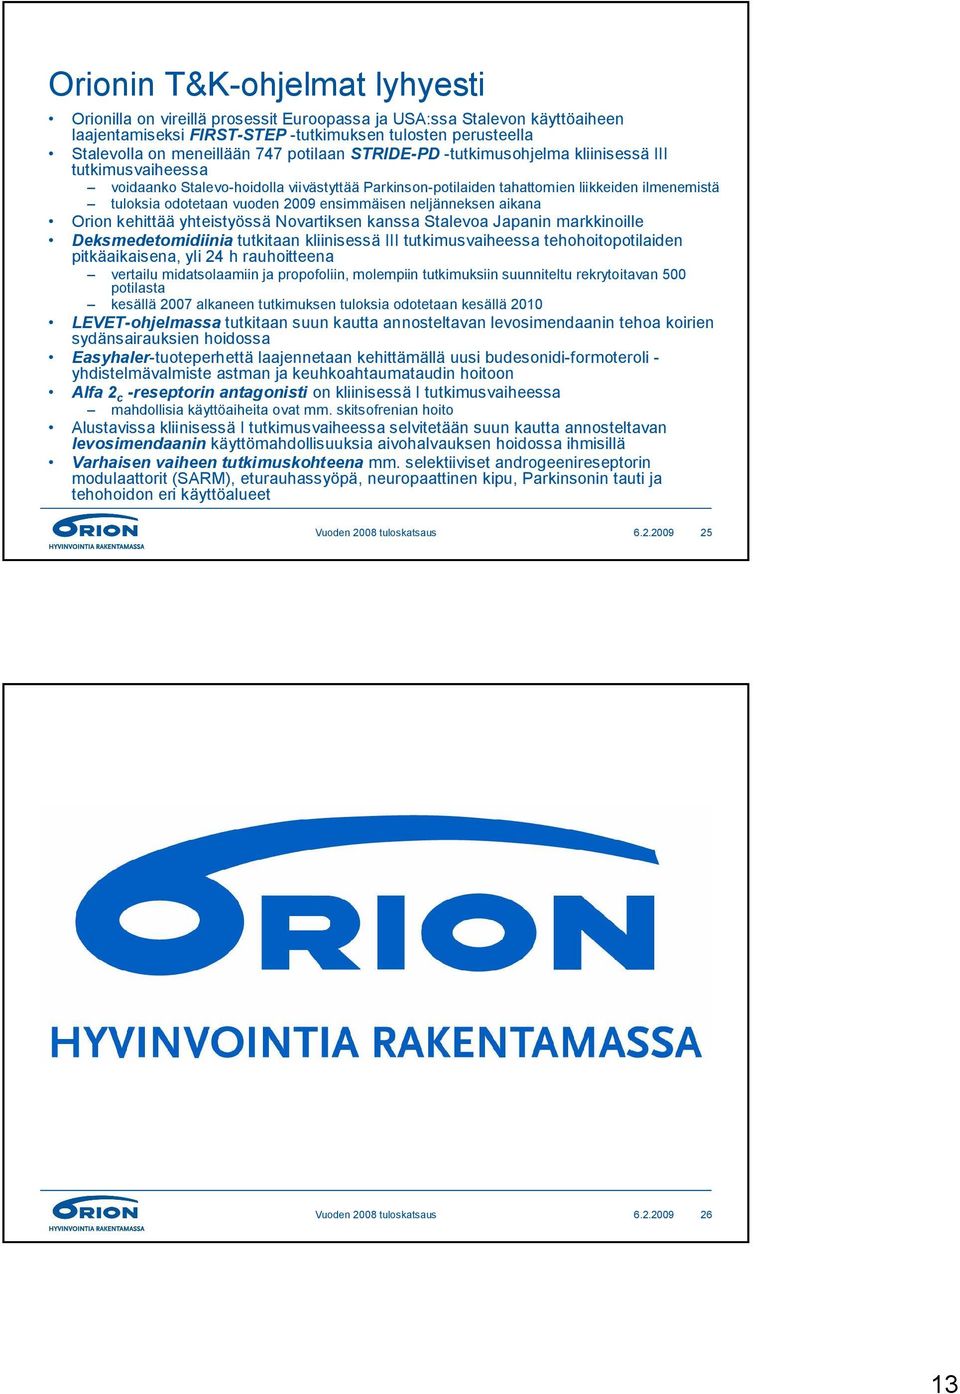 ensimmäisen neljänneksen aikana Orion kehittää yhteistyössä Novartiksen kanssa Stalevoa Japanin markkinoille Deksmedetomidiinia tutkitaan kliinisessä III tutkimusvaiheessa tehohoitopotilaiden